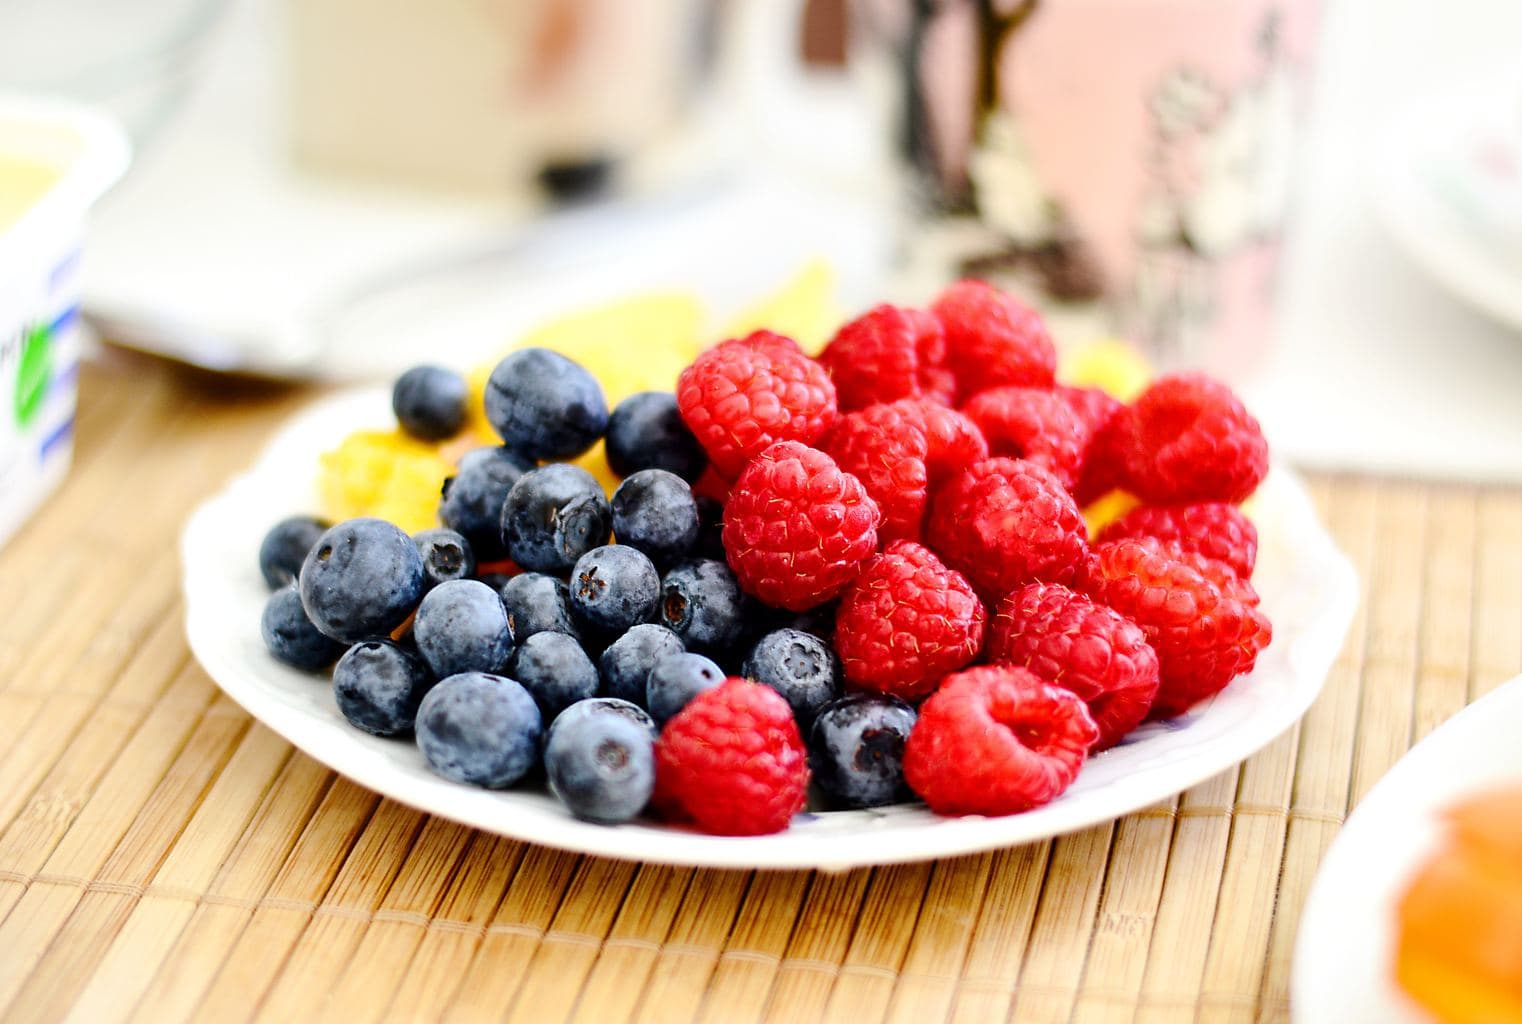 fruit, plate, raspberries, blueberries, breakfast, snack